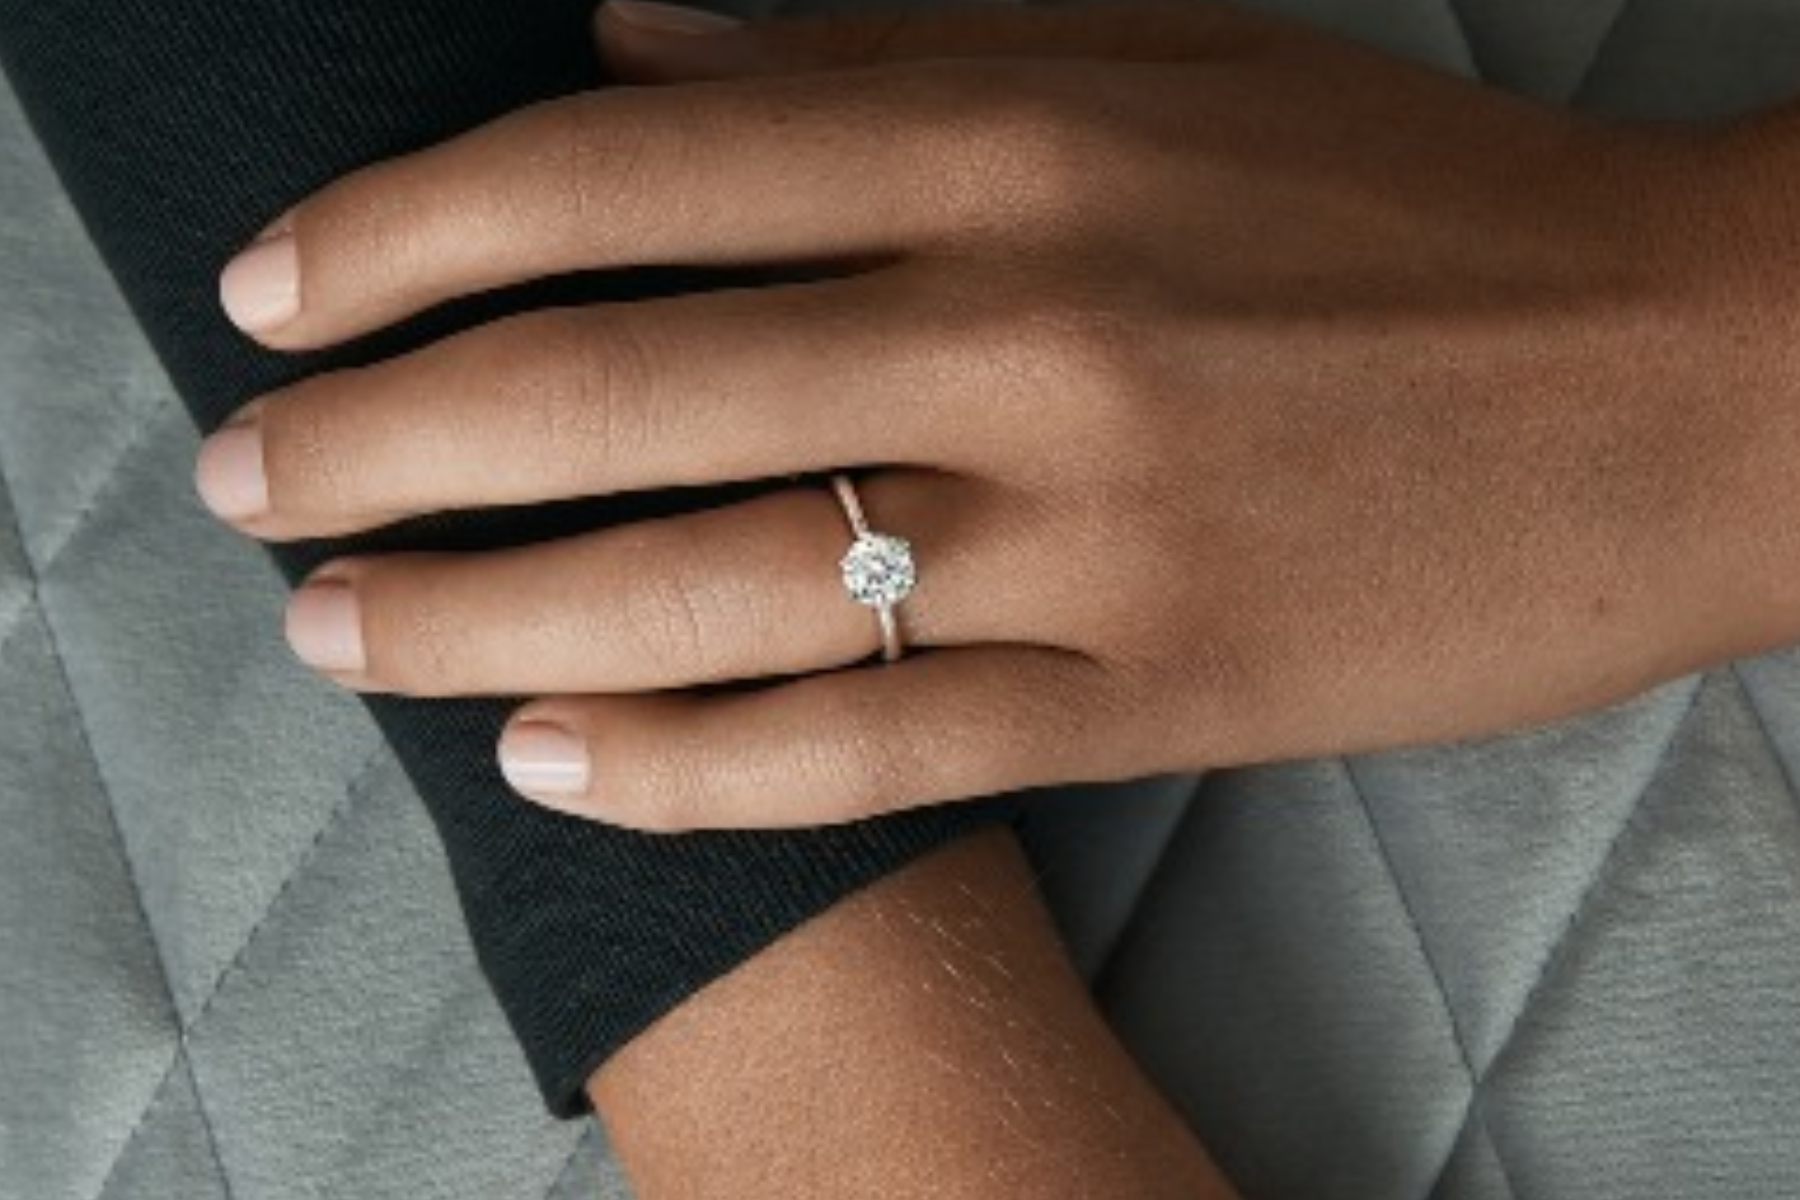 Classic Solitaire Engagement Rings - Unique Diamond Shape